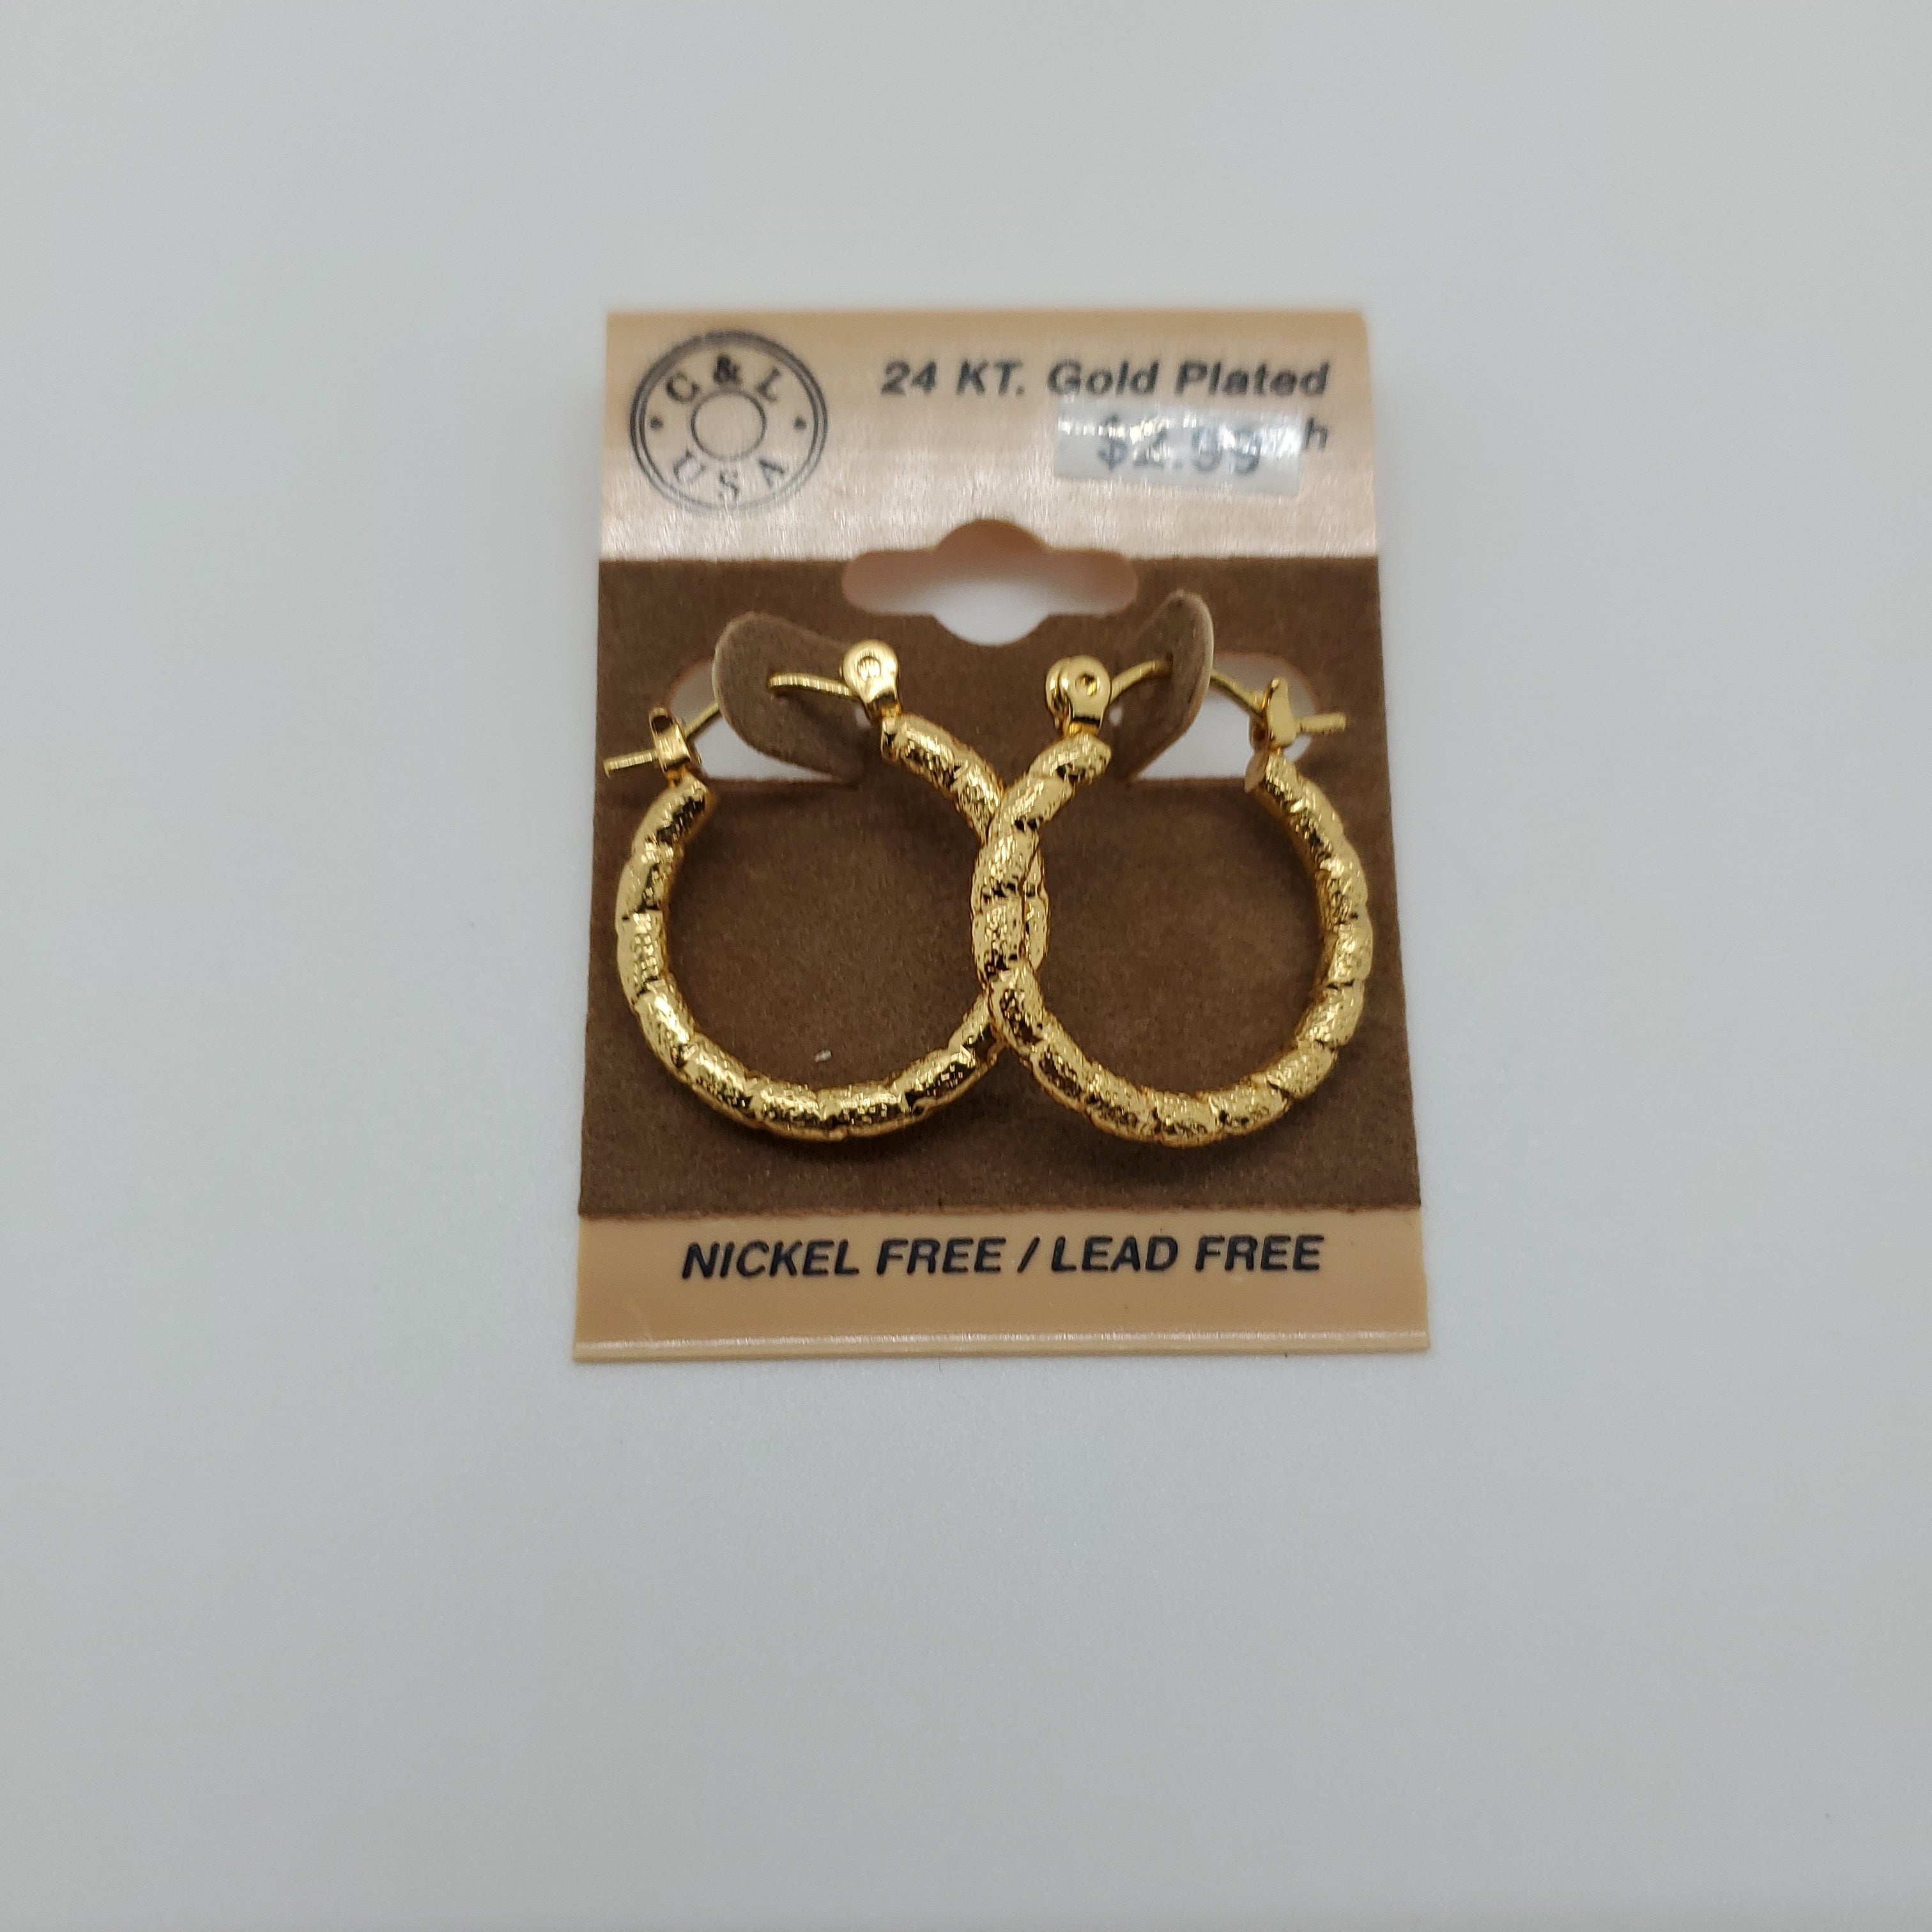 24KT Gold Plated Pincatch Hoop Earrings NPK113 - Beauty Bar & Supply